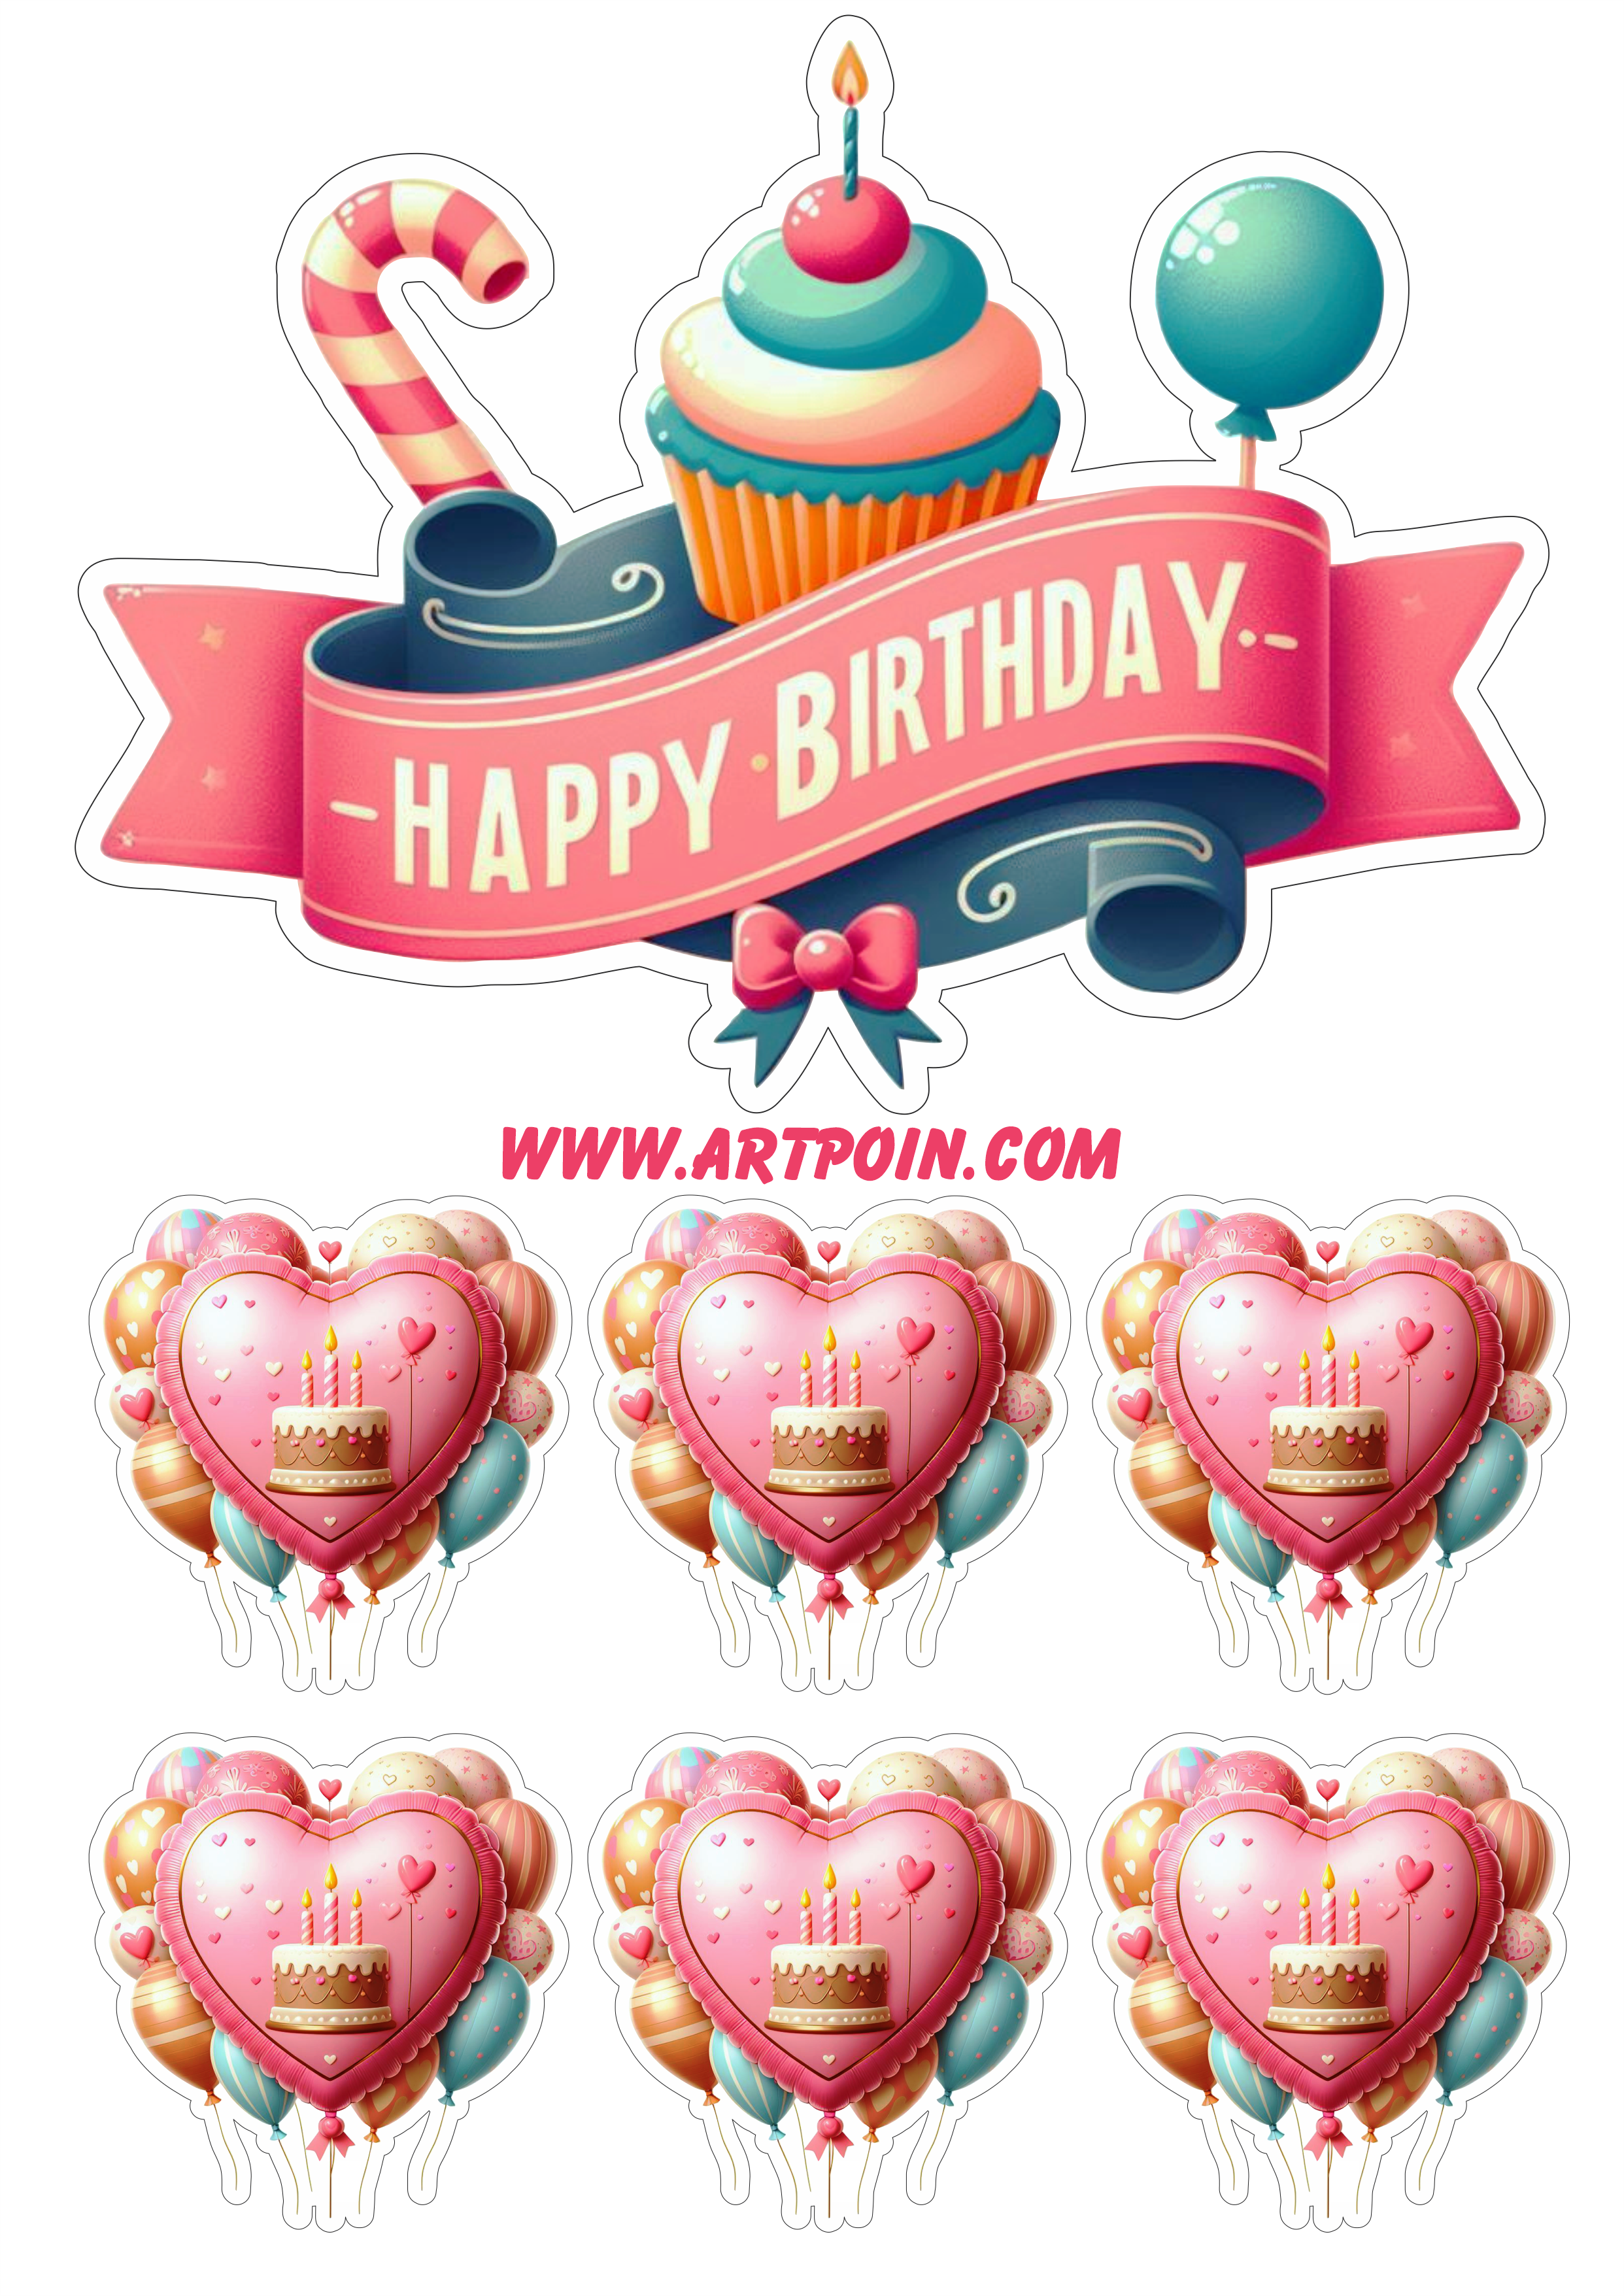 Happy birthday topo de bolo para festa de aniversário png